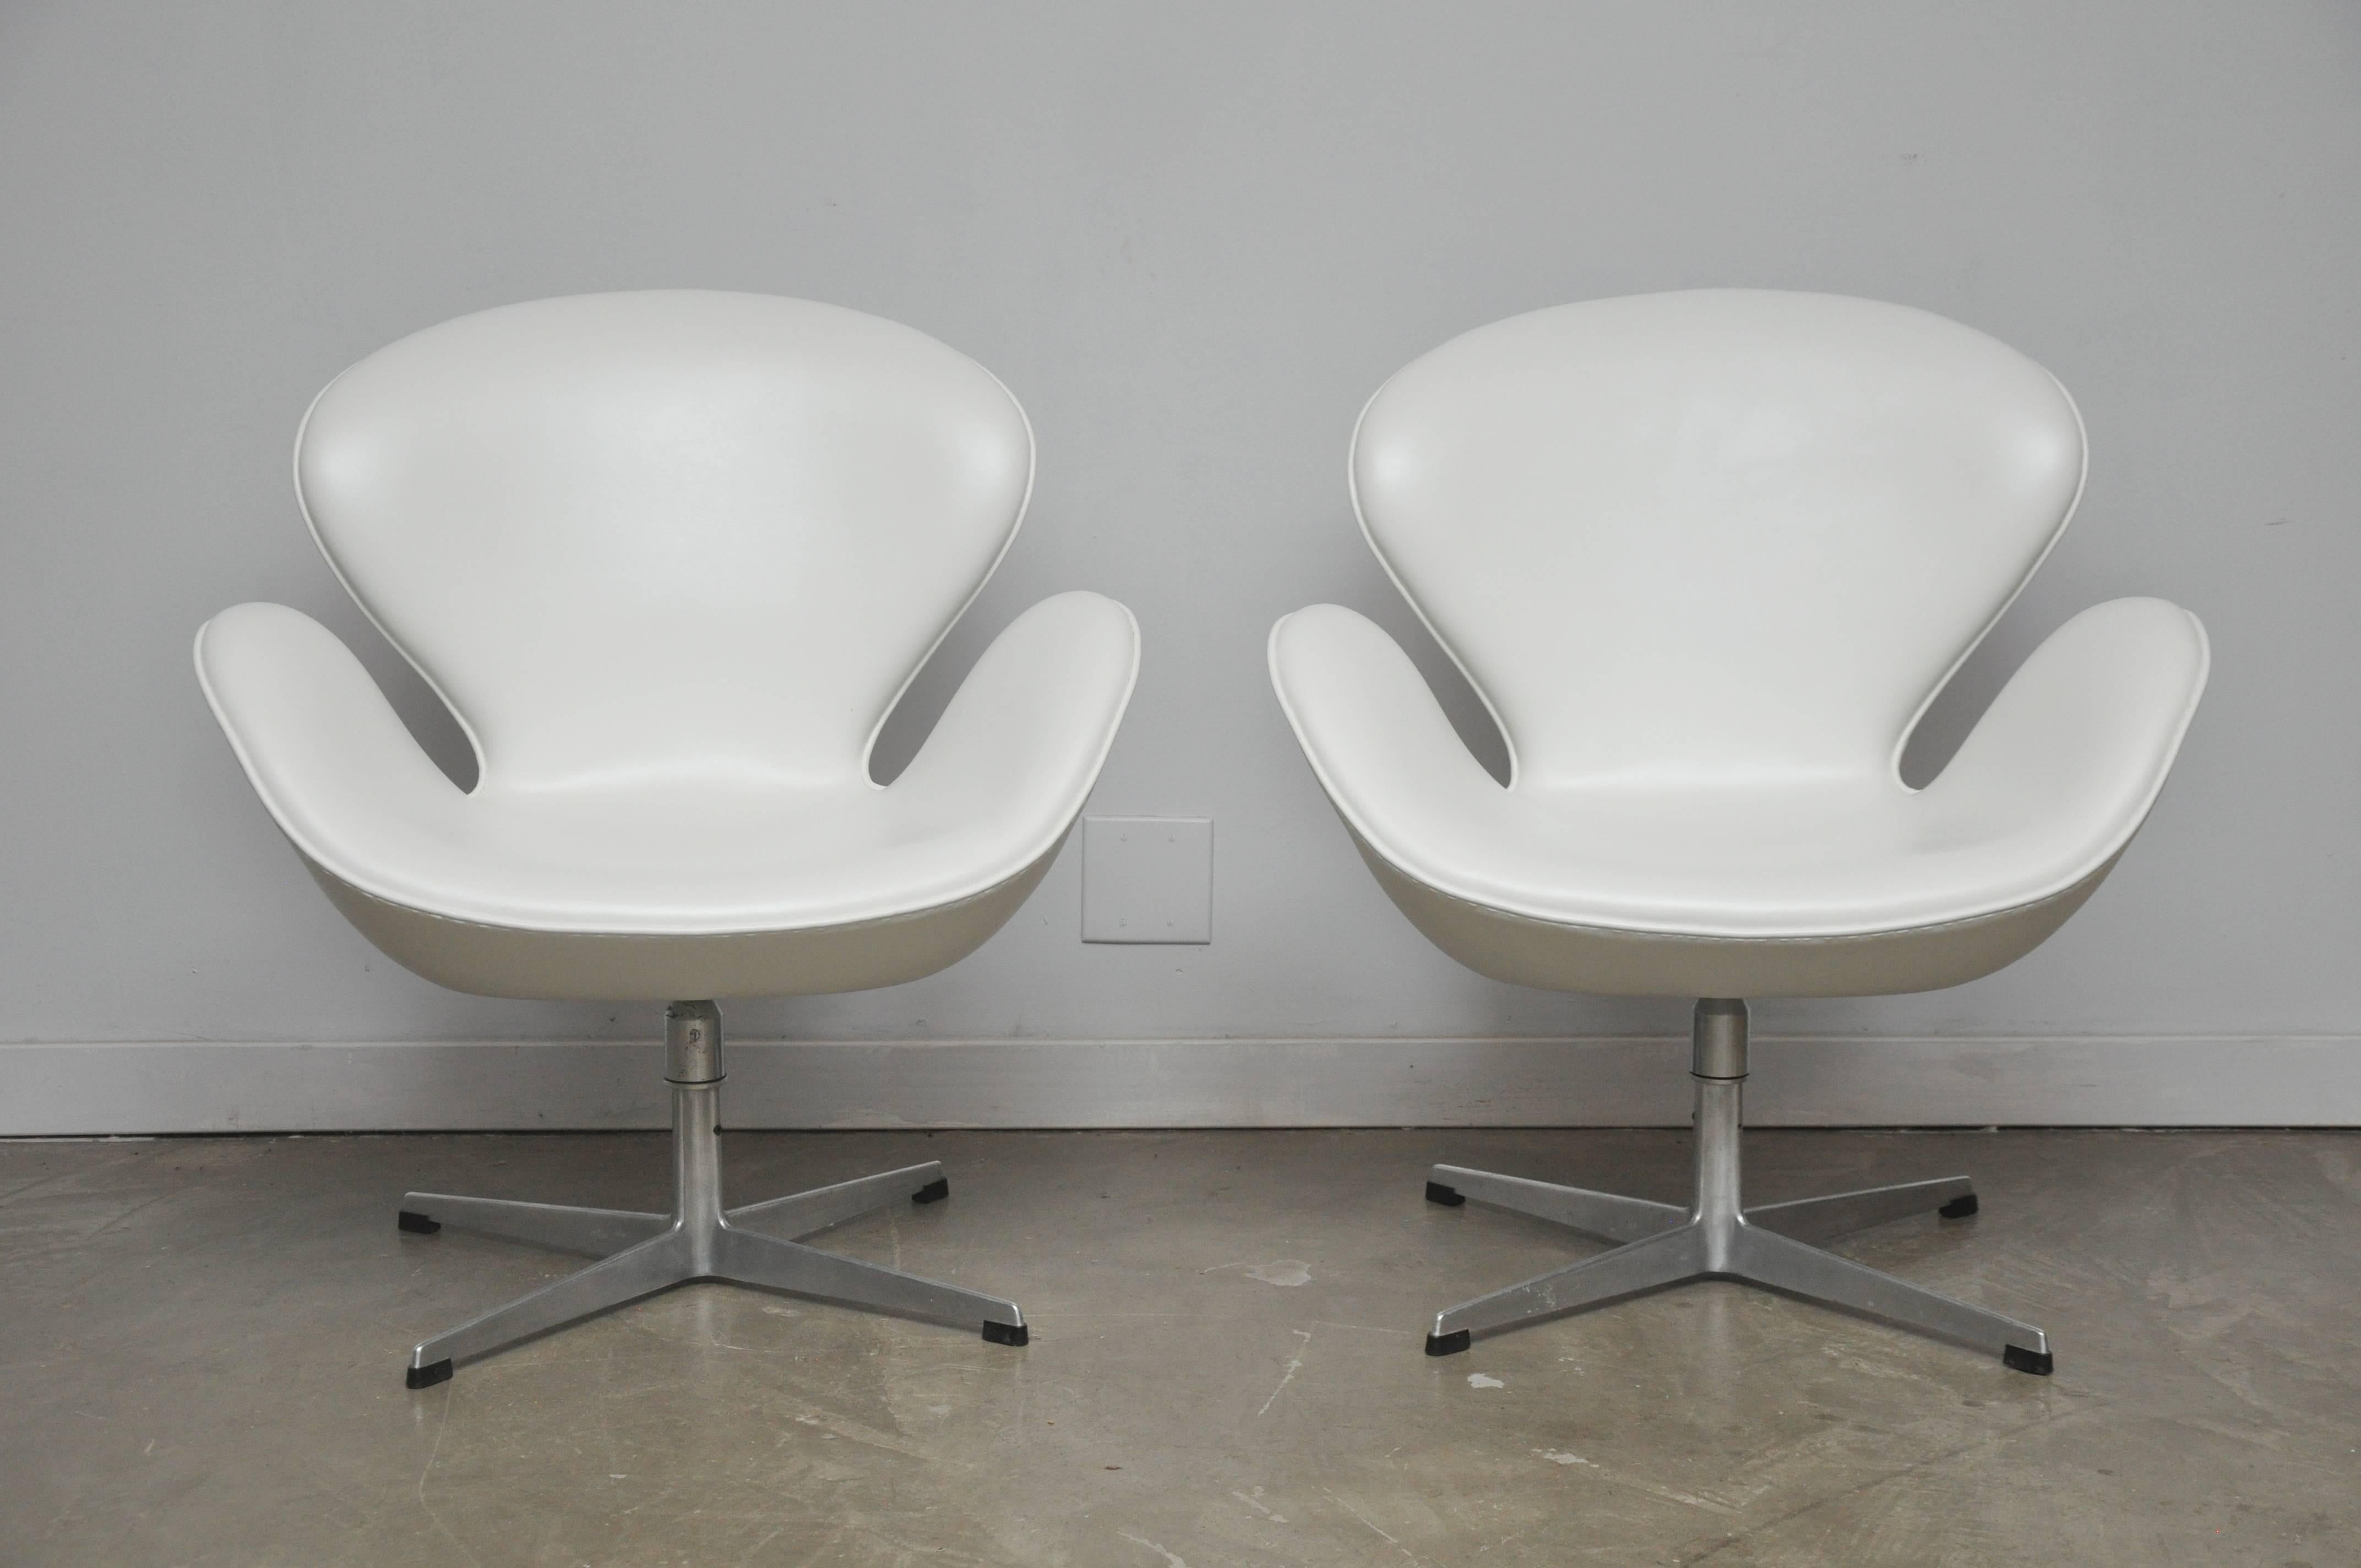 American Early Model Swan Chairs by Arne Jacobsen, Swivel & Tilt